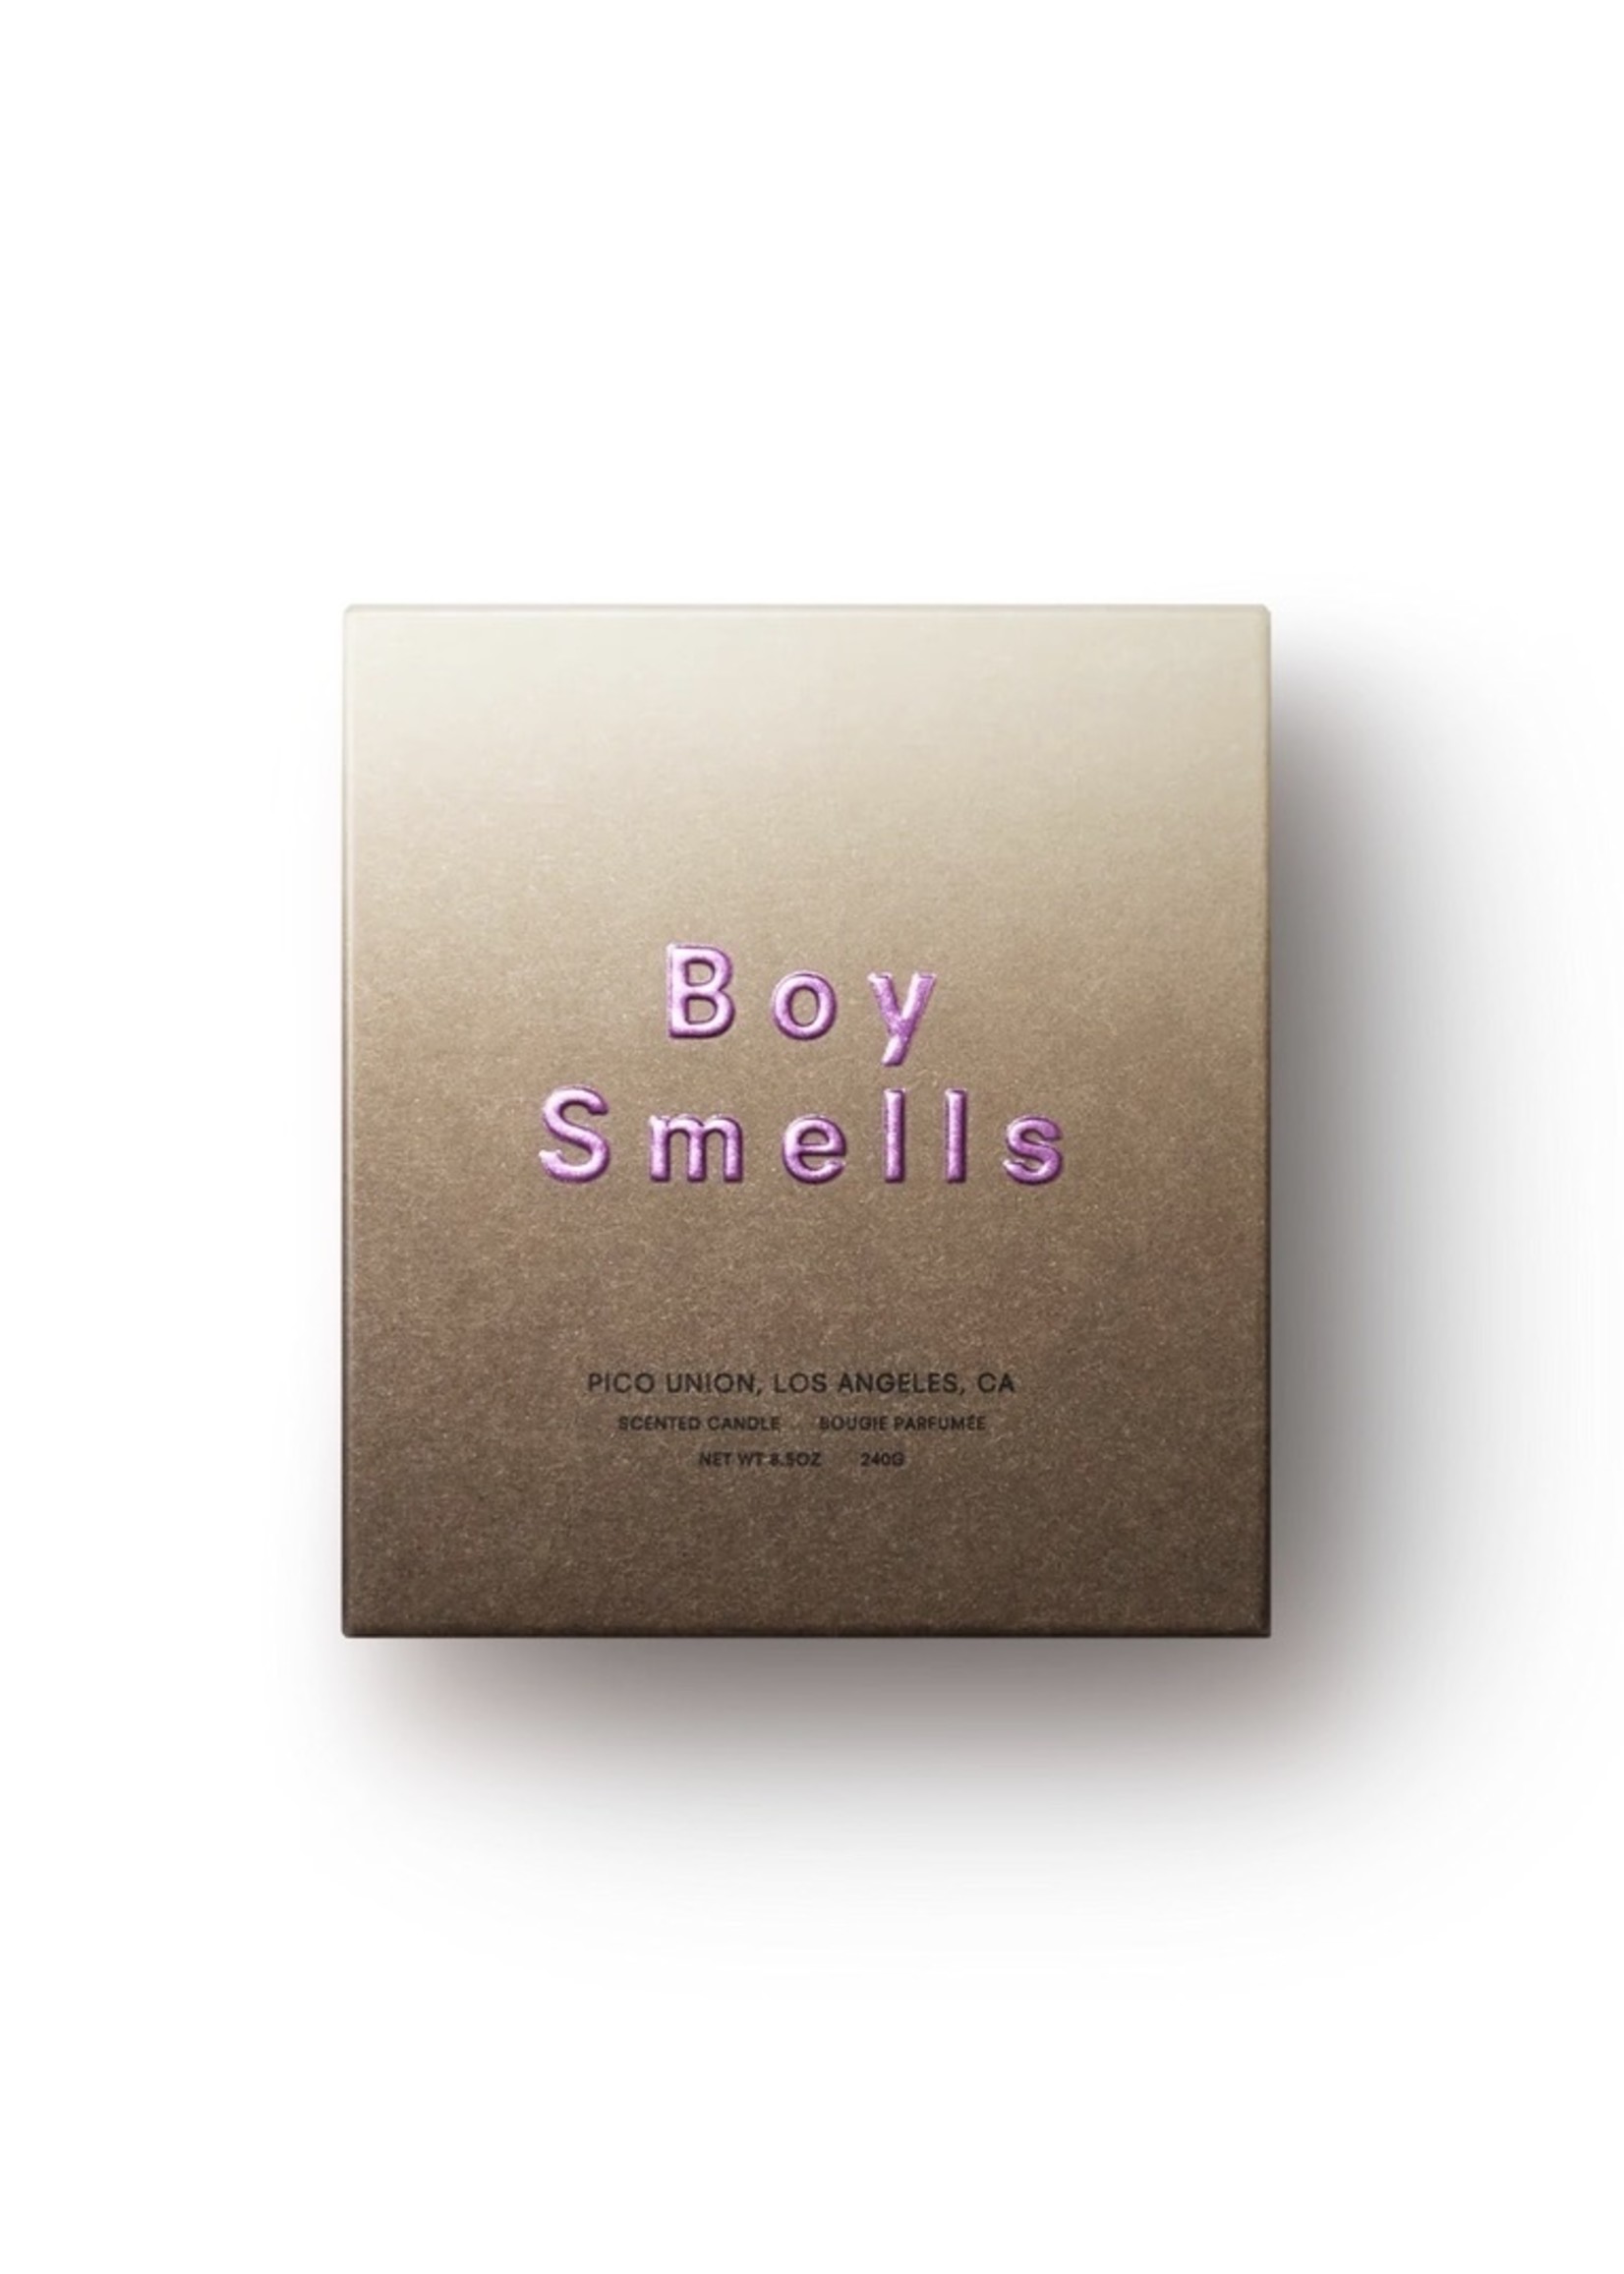 Boy Smells "Hypernature" Candles by Boy Smells